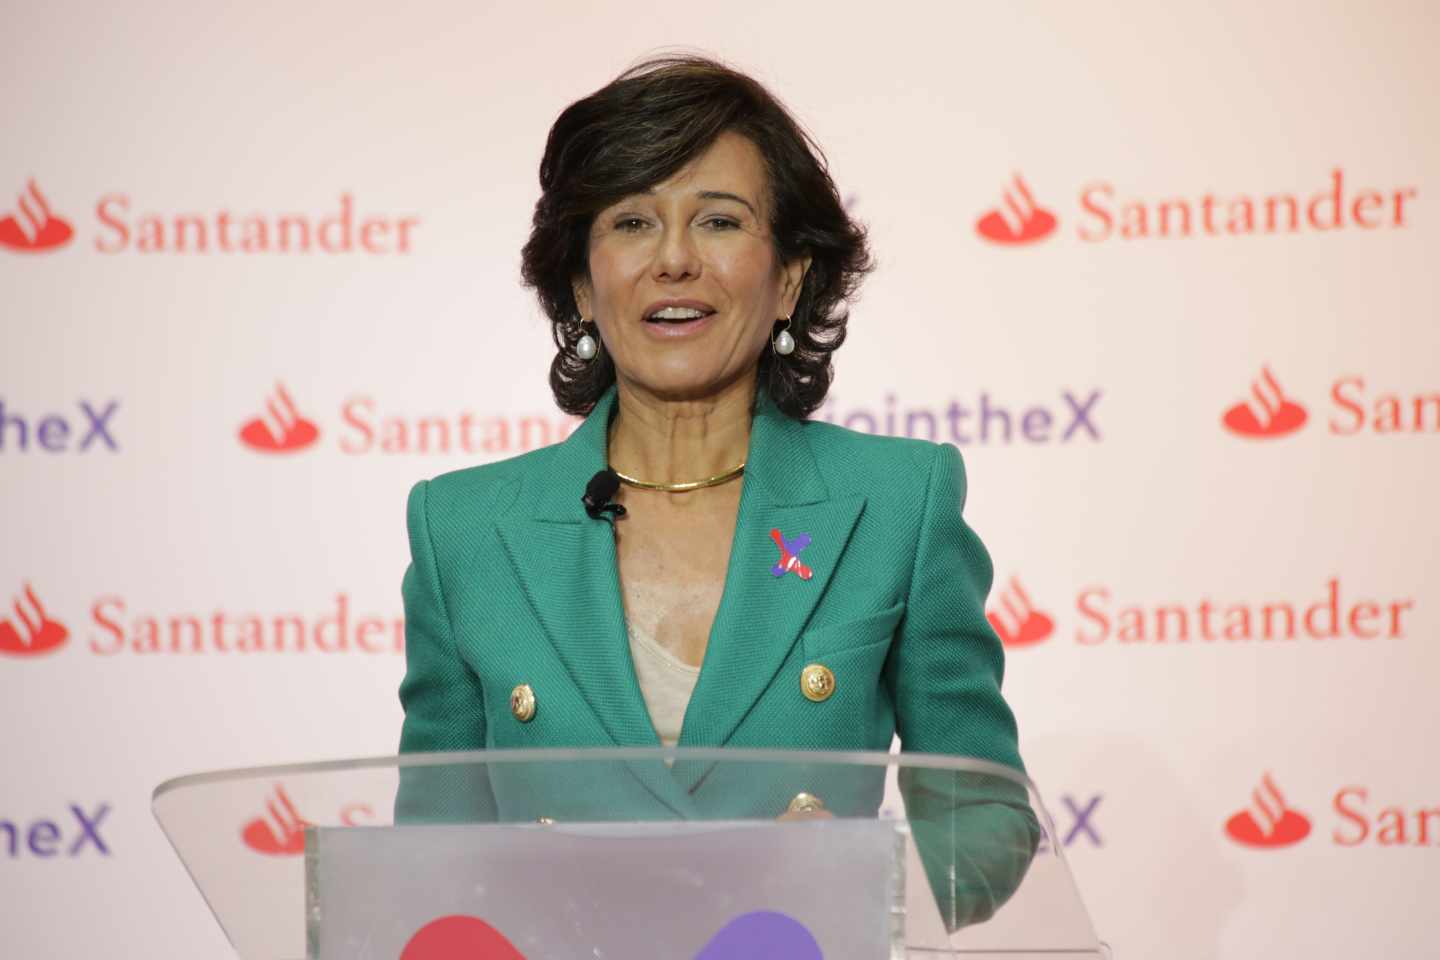 Ana Botín, presidenta de Santander, en el lanzamiento de Santander X.